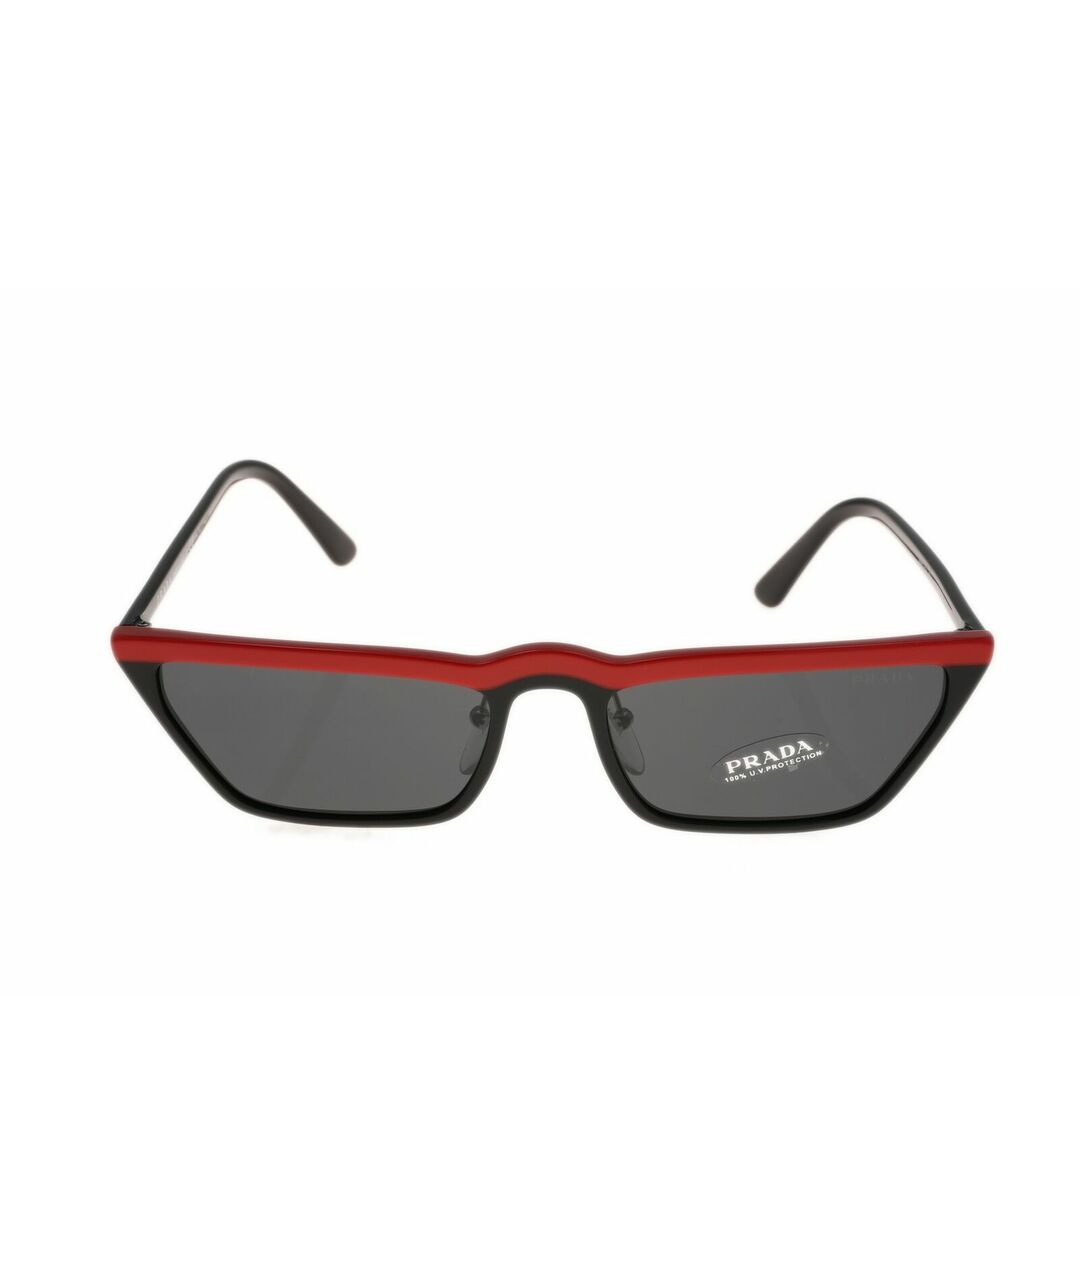 PRADA Пластиковые солнцезащитные очки, фото 1